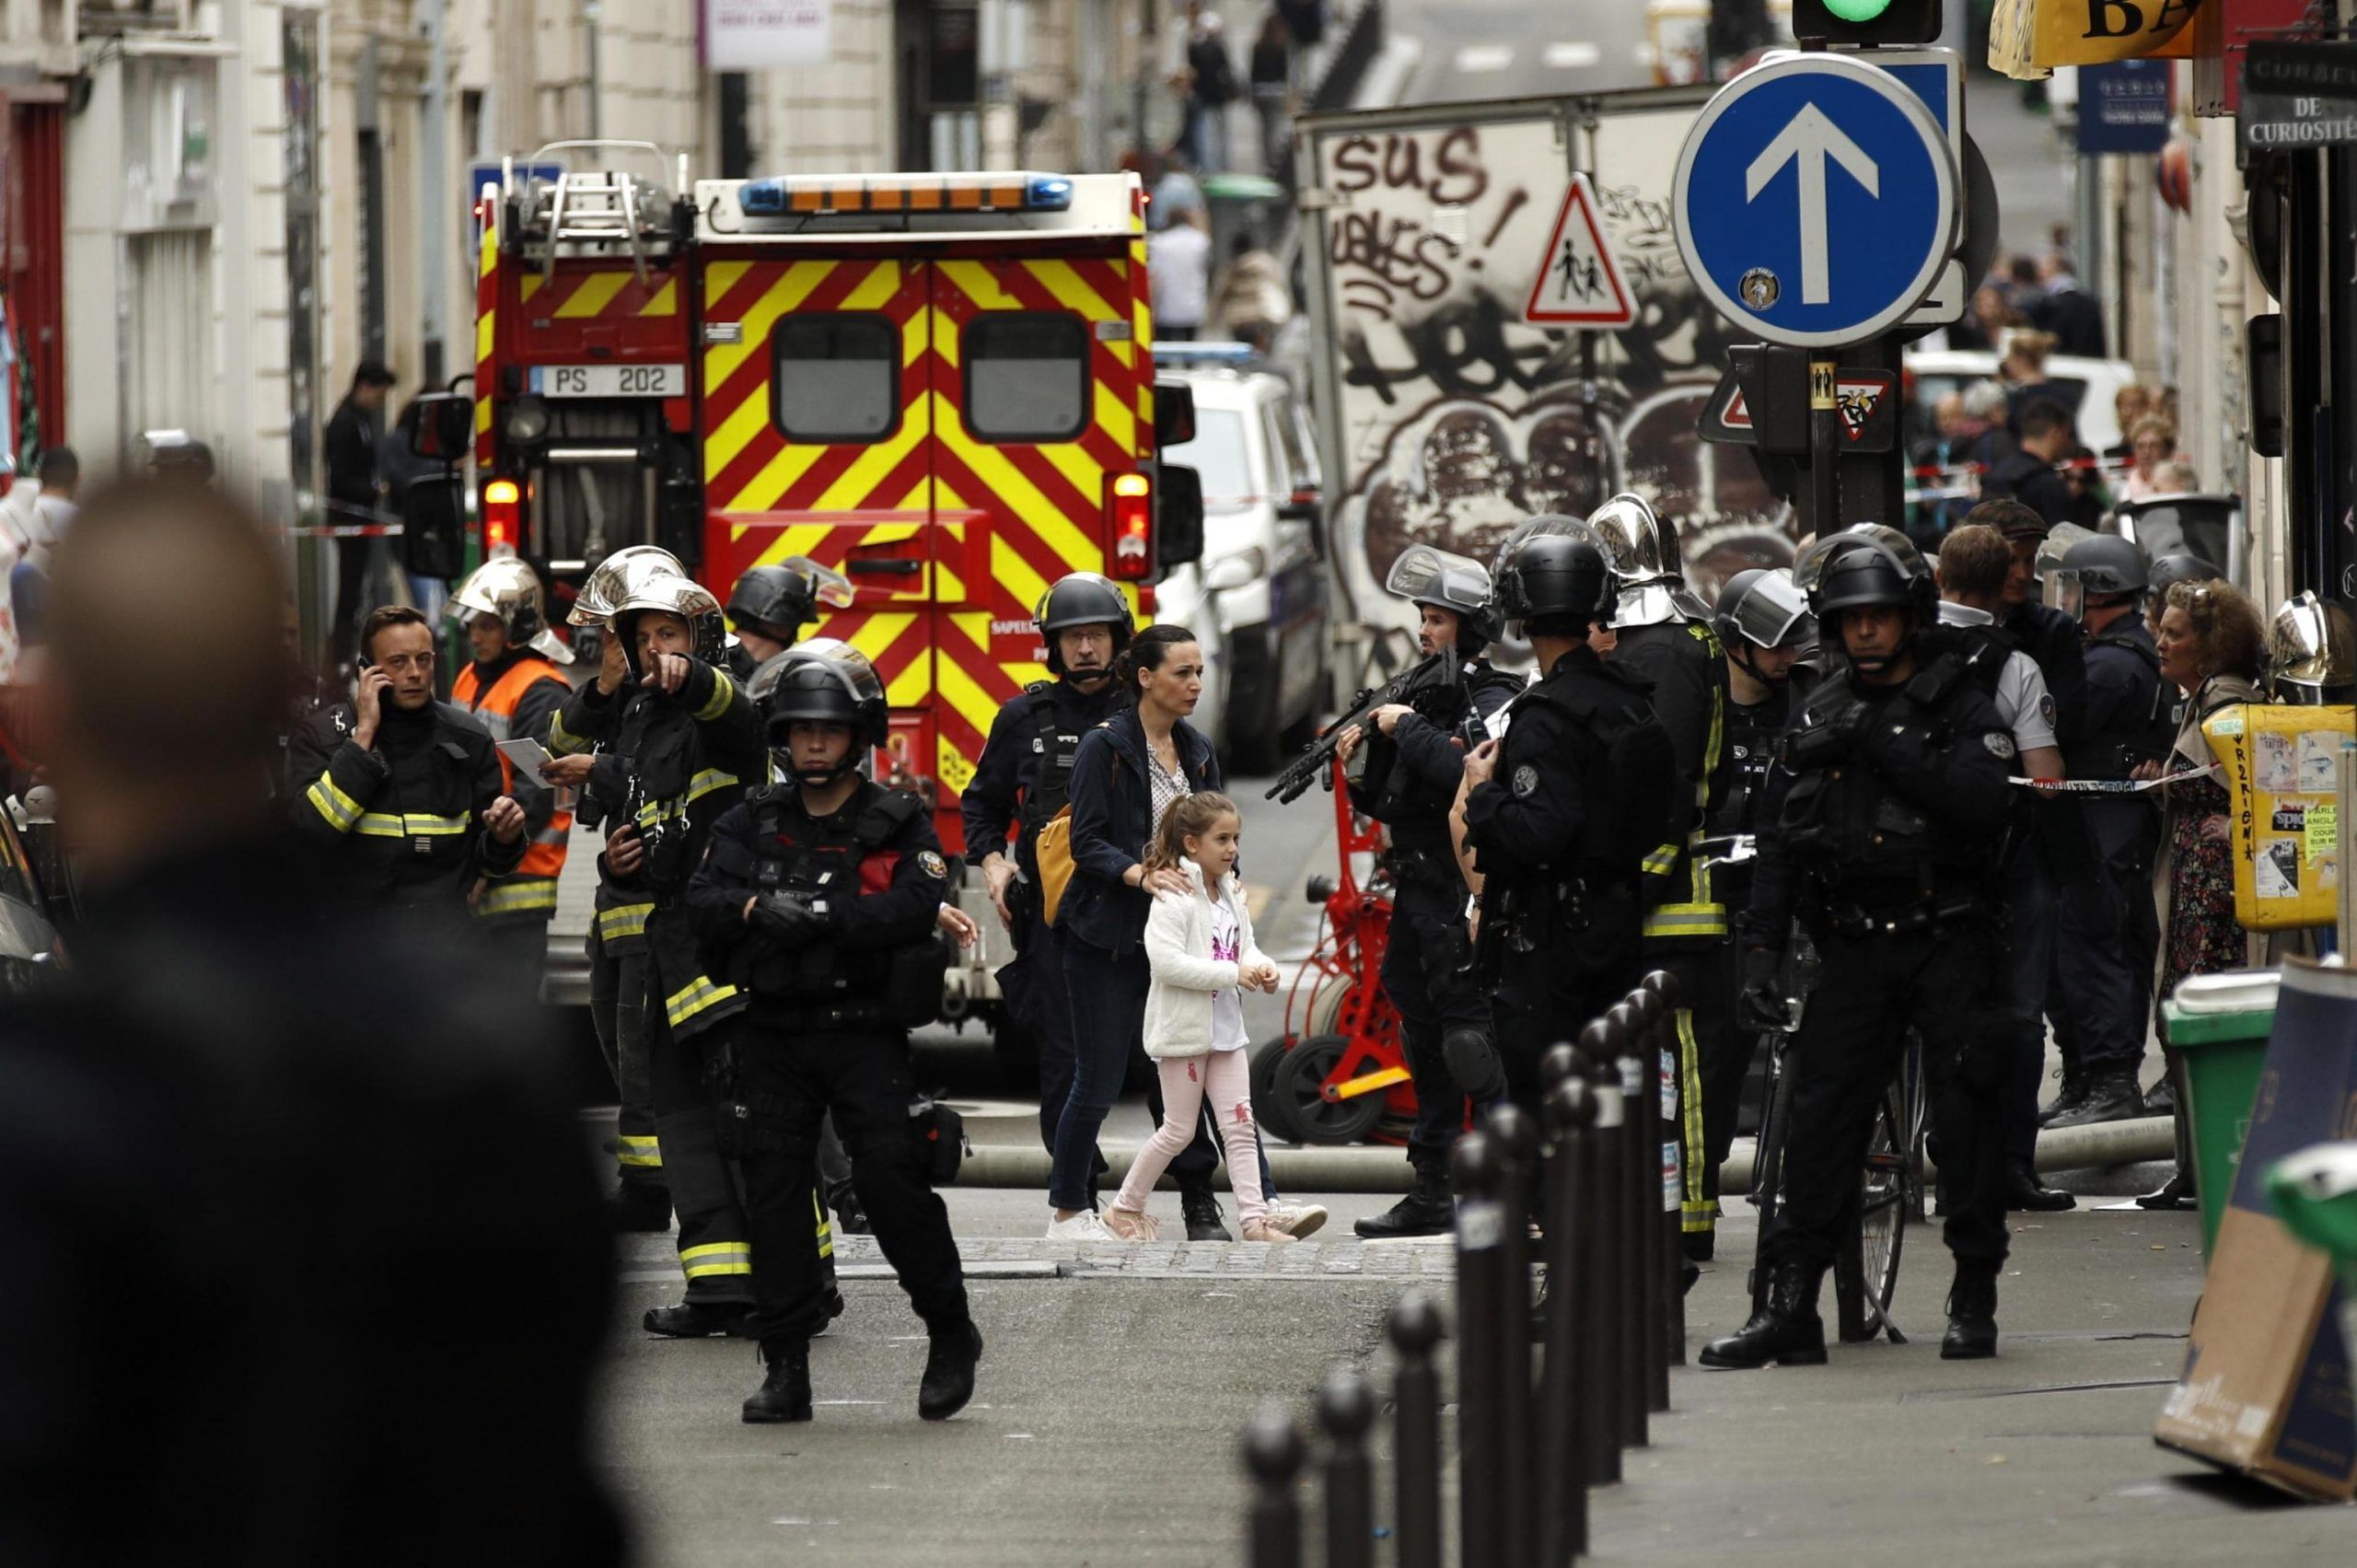 Presa ostaggi Parigi: barricato in casa,minaccia bomba